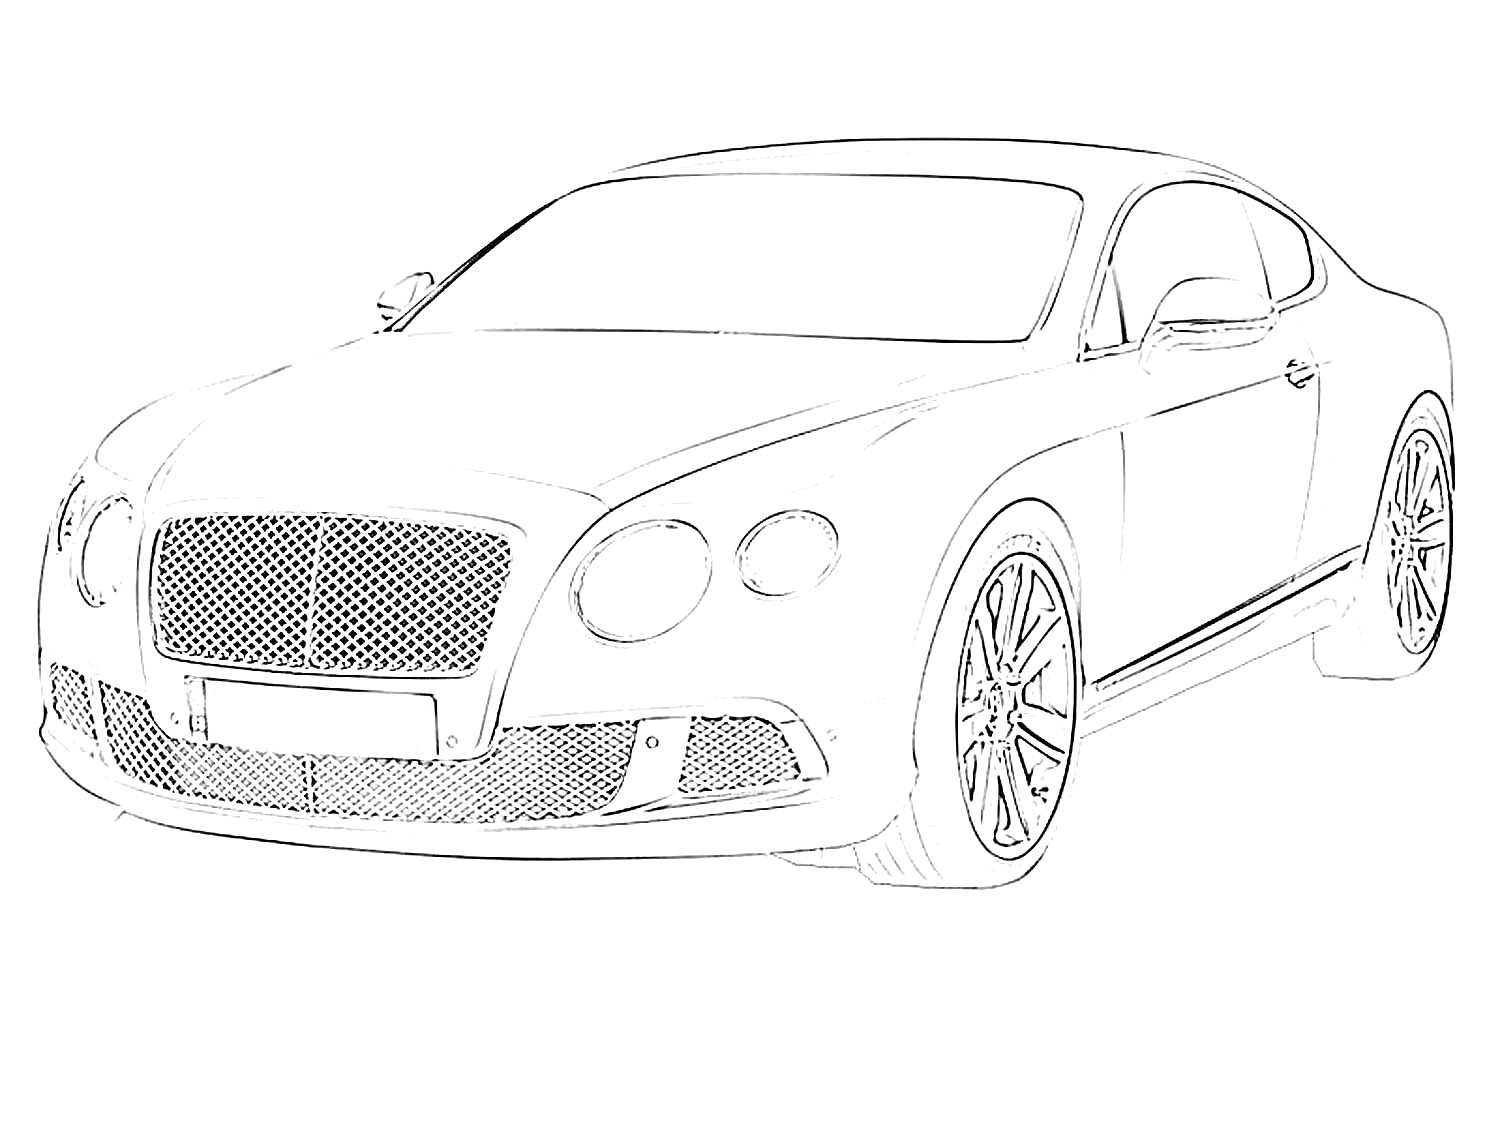 Раскраска Bentley Continental GT, спортивное купе с габаритным передним бампером, массивной решеткой радиатора и круглыми фарами